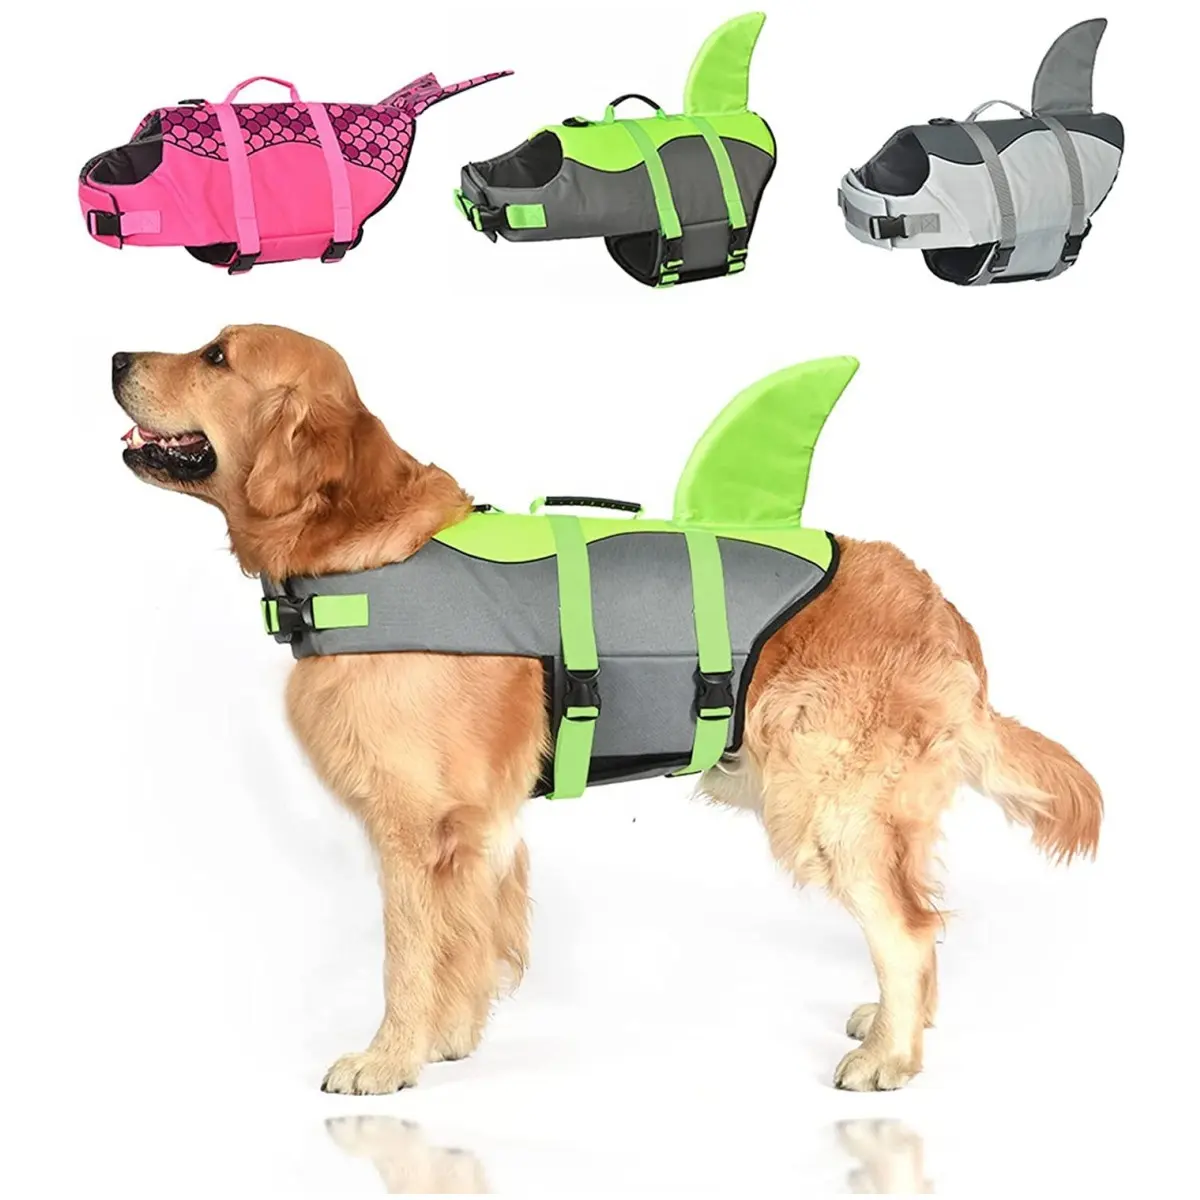 OEM personalizado al por mayor ajustable reflectante impermeable mascota perro chaleco salvavidas para perros pequeños medianos y grandes